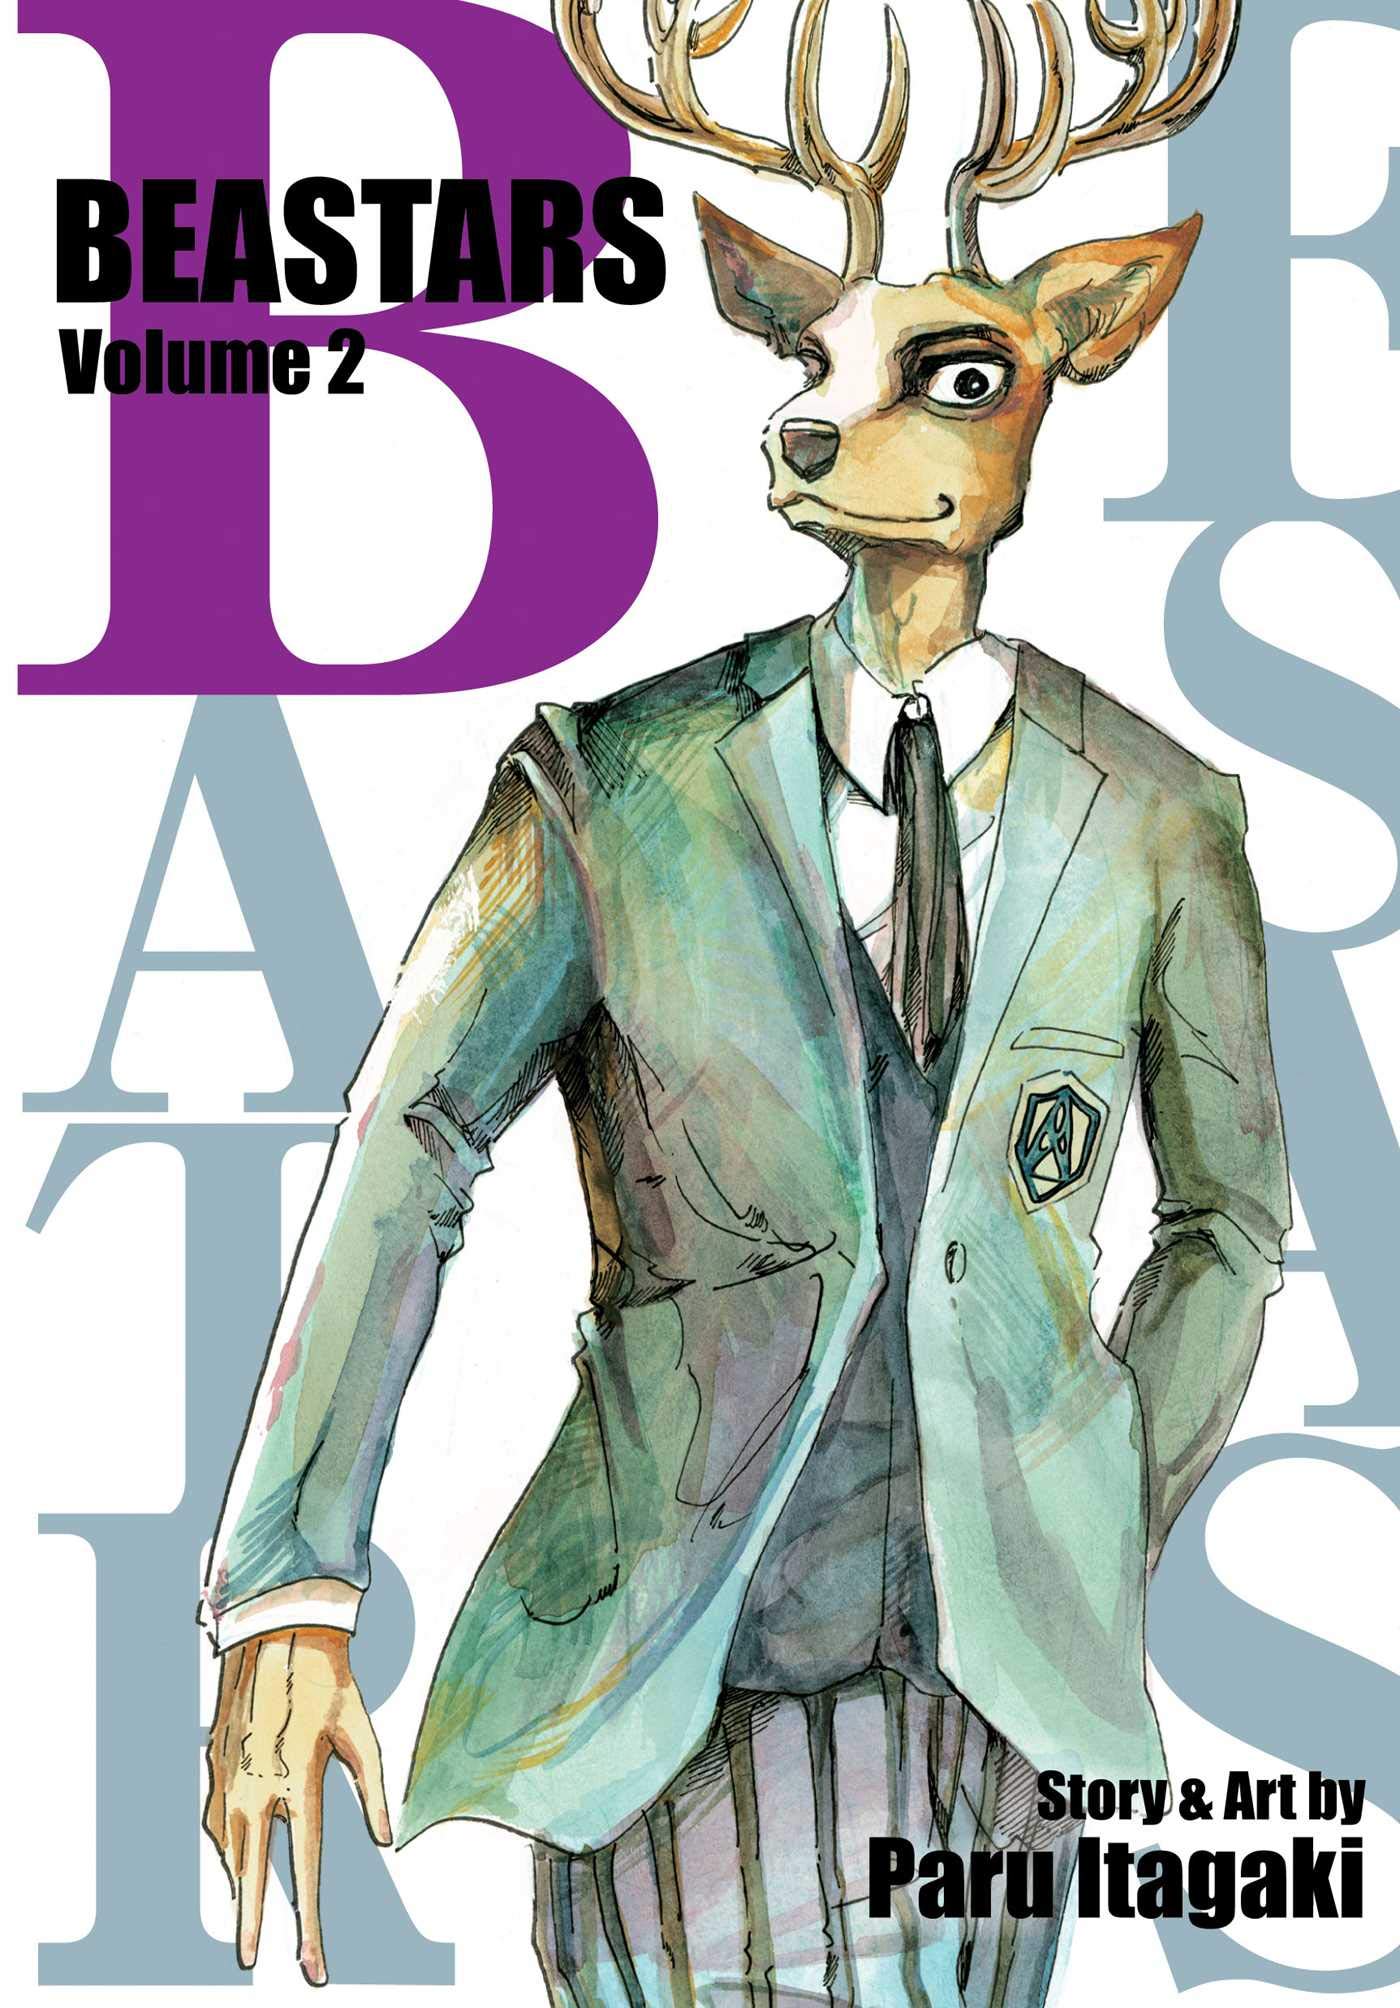 Beastars Vol. 2 | Paru Itagaki